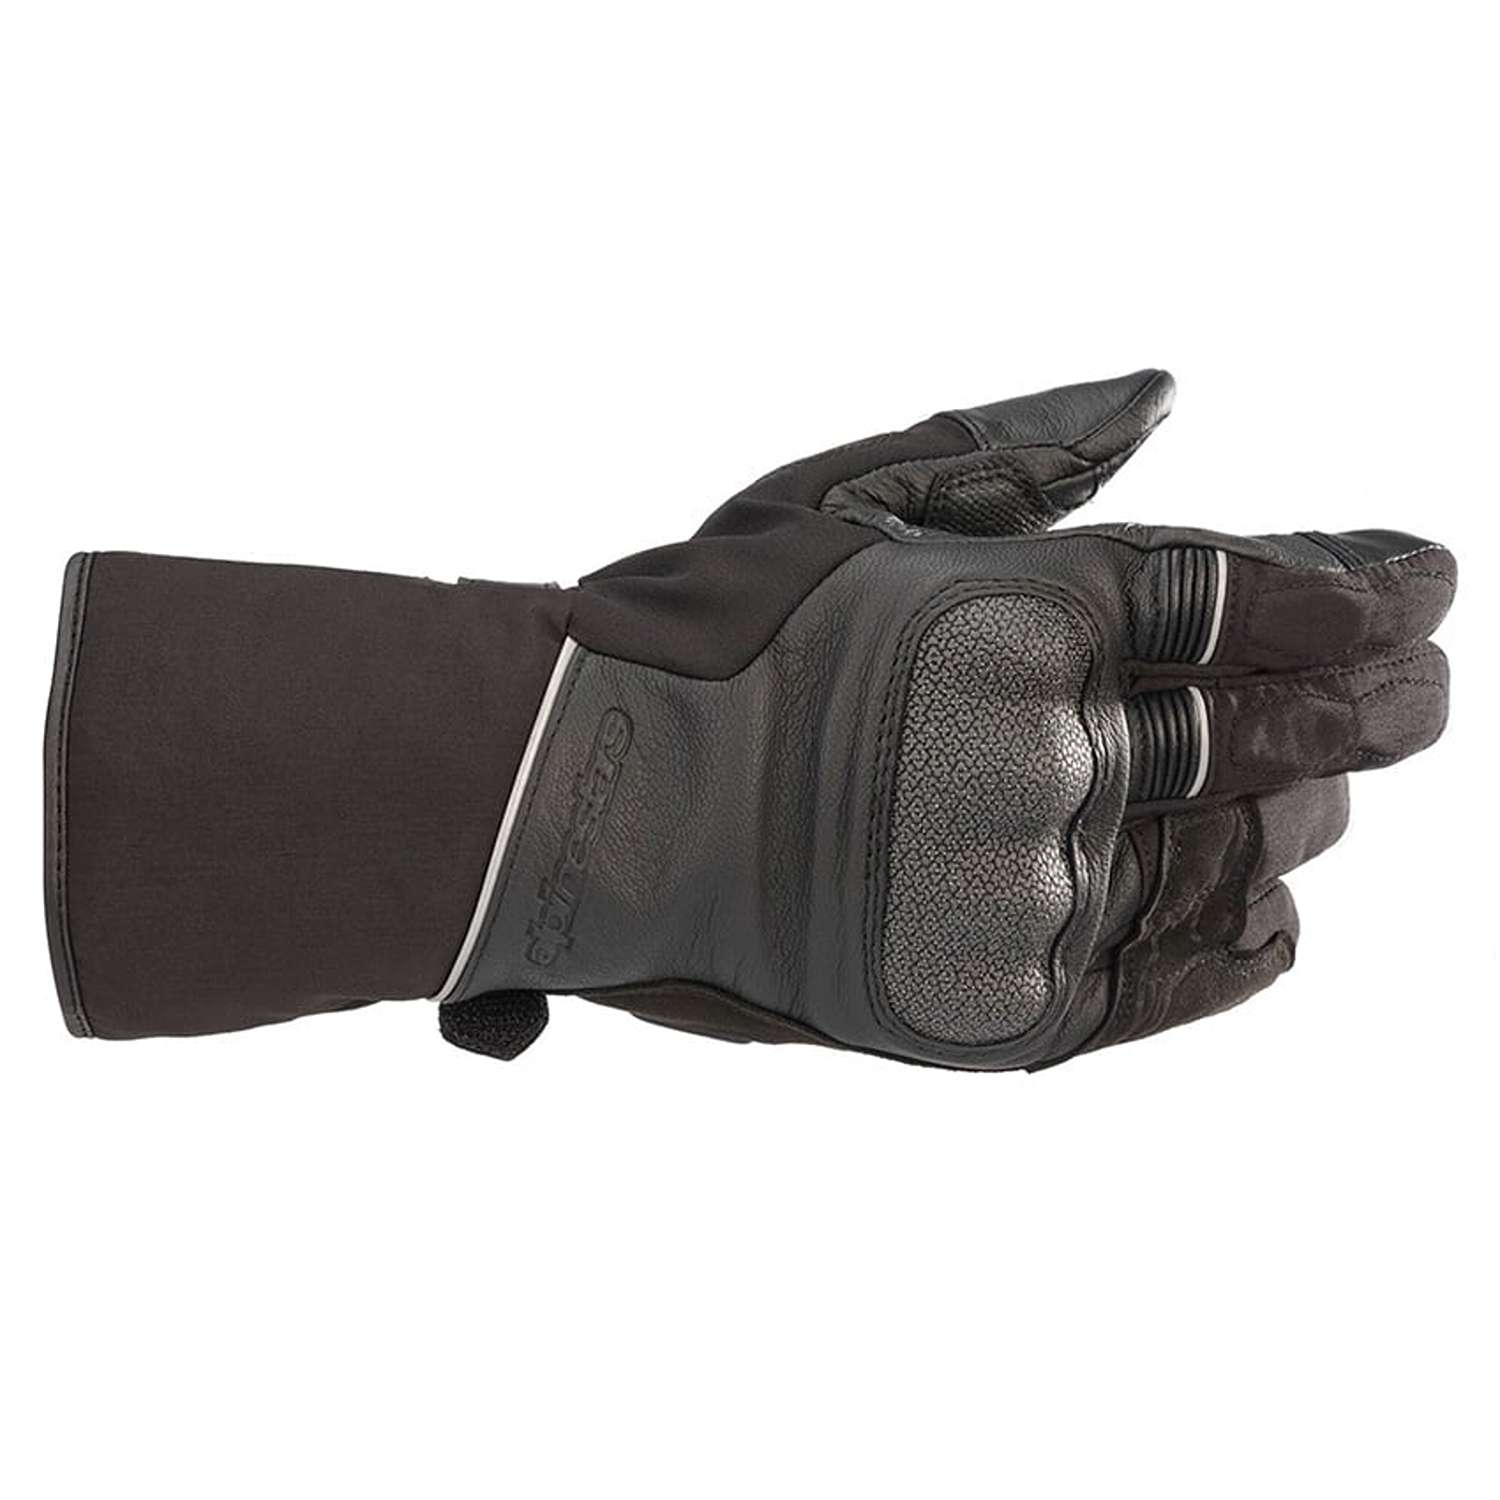 Image of Alpinestars Wr-2 V2 Gore-Tex Gloves With Gore Grip Technology Black Größe 3XL